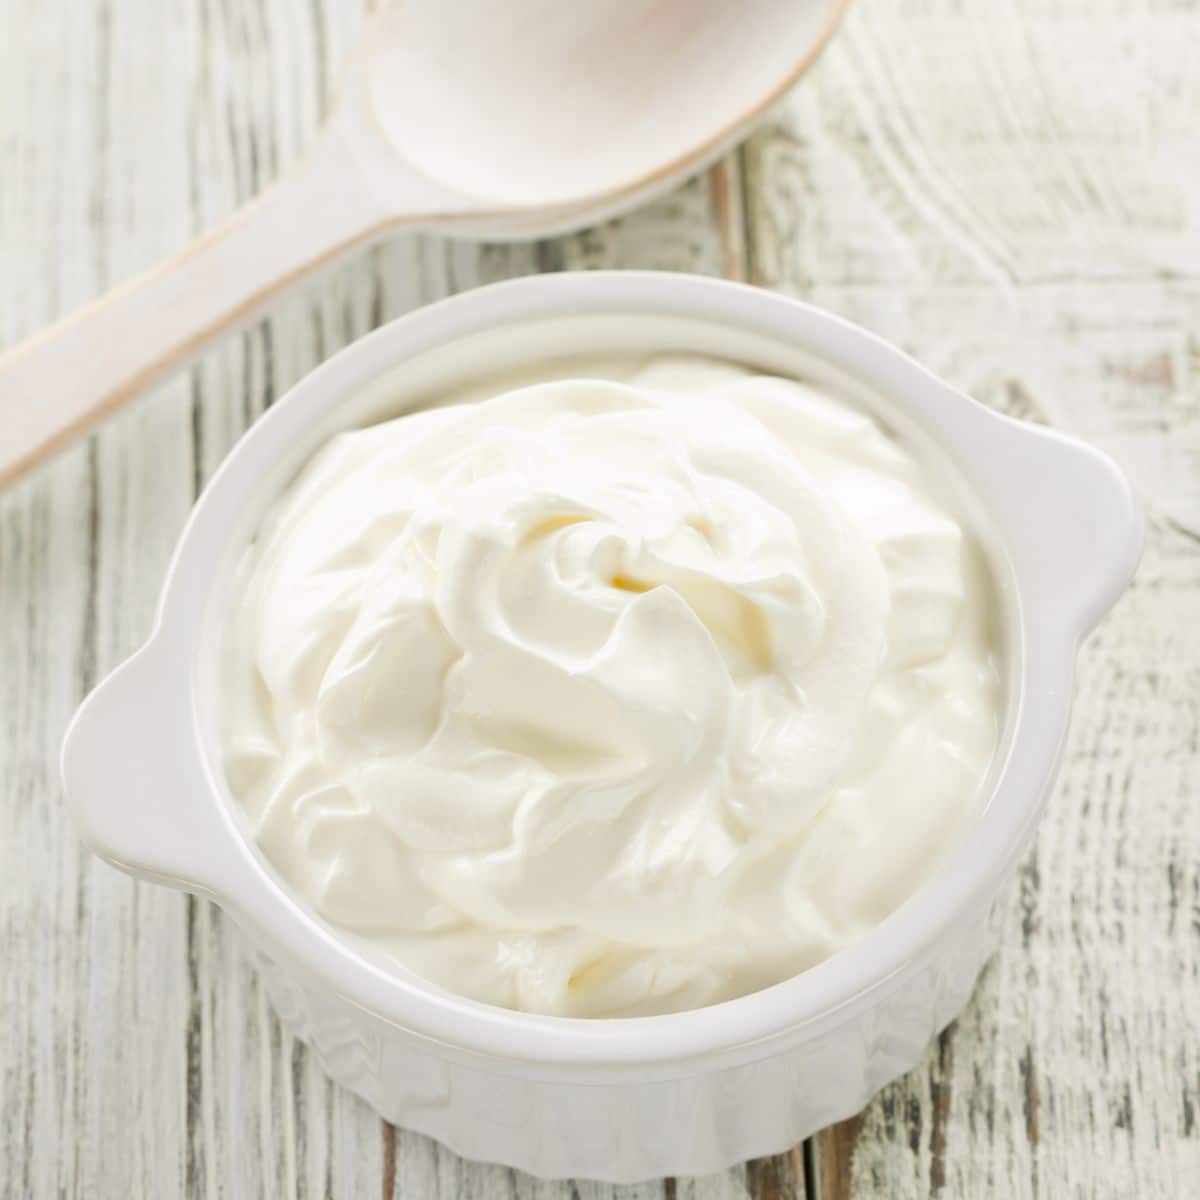 Sour cream in a small white dish.